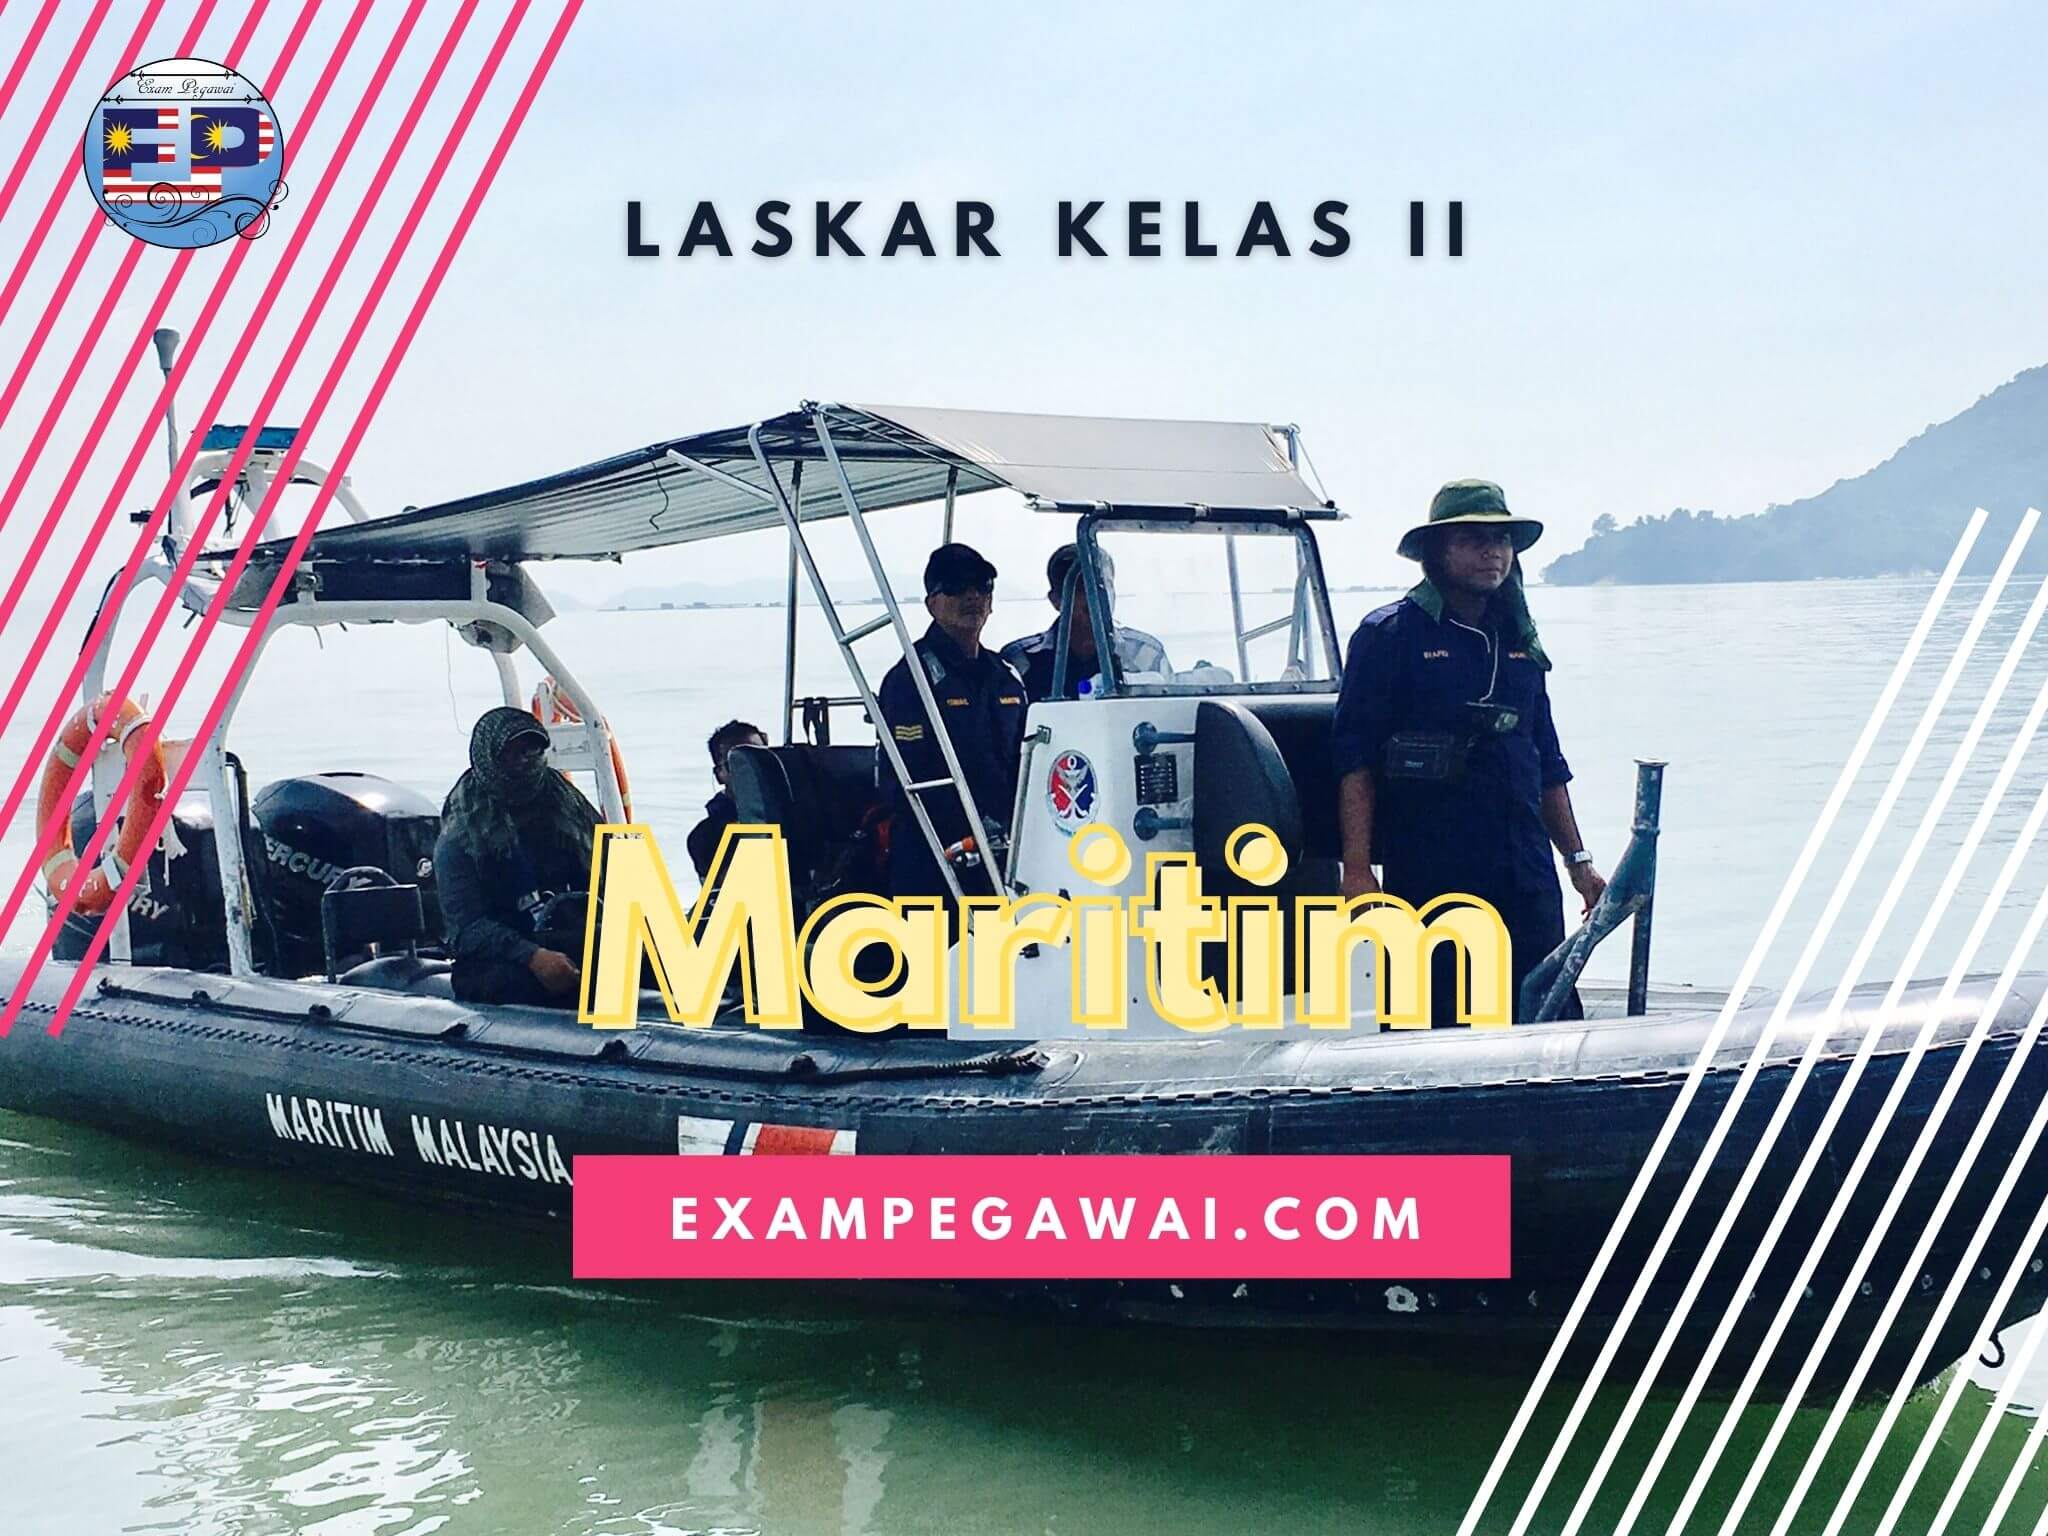 Contoh Soalan Laskar Kelas 2 Maritim Malaysia Gred T1  Exampegawai